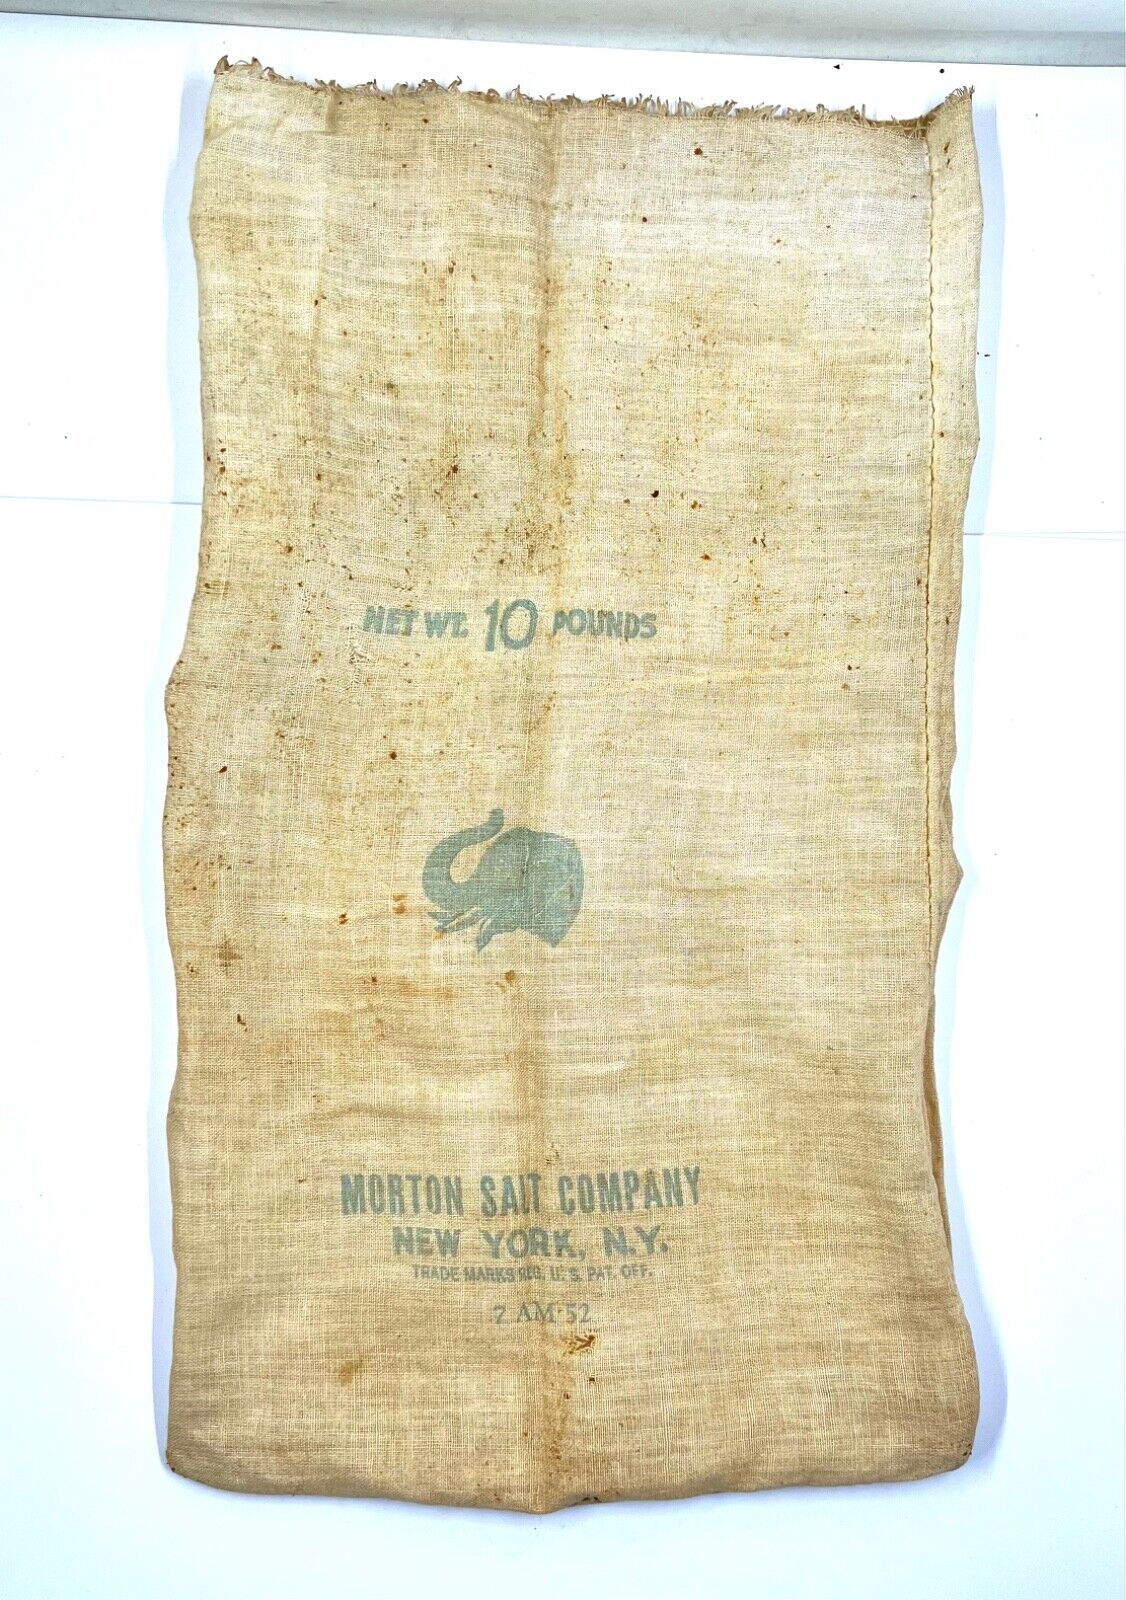 Vintage Original Morton Salt 10 Pound Cloth Sack New York, NY, 7-AM-52